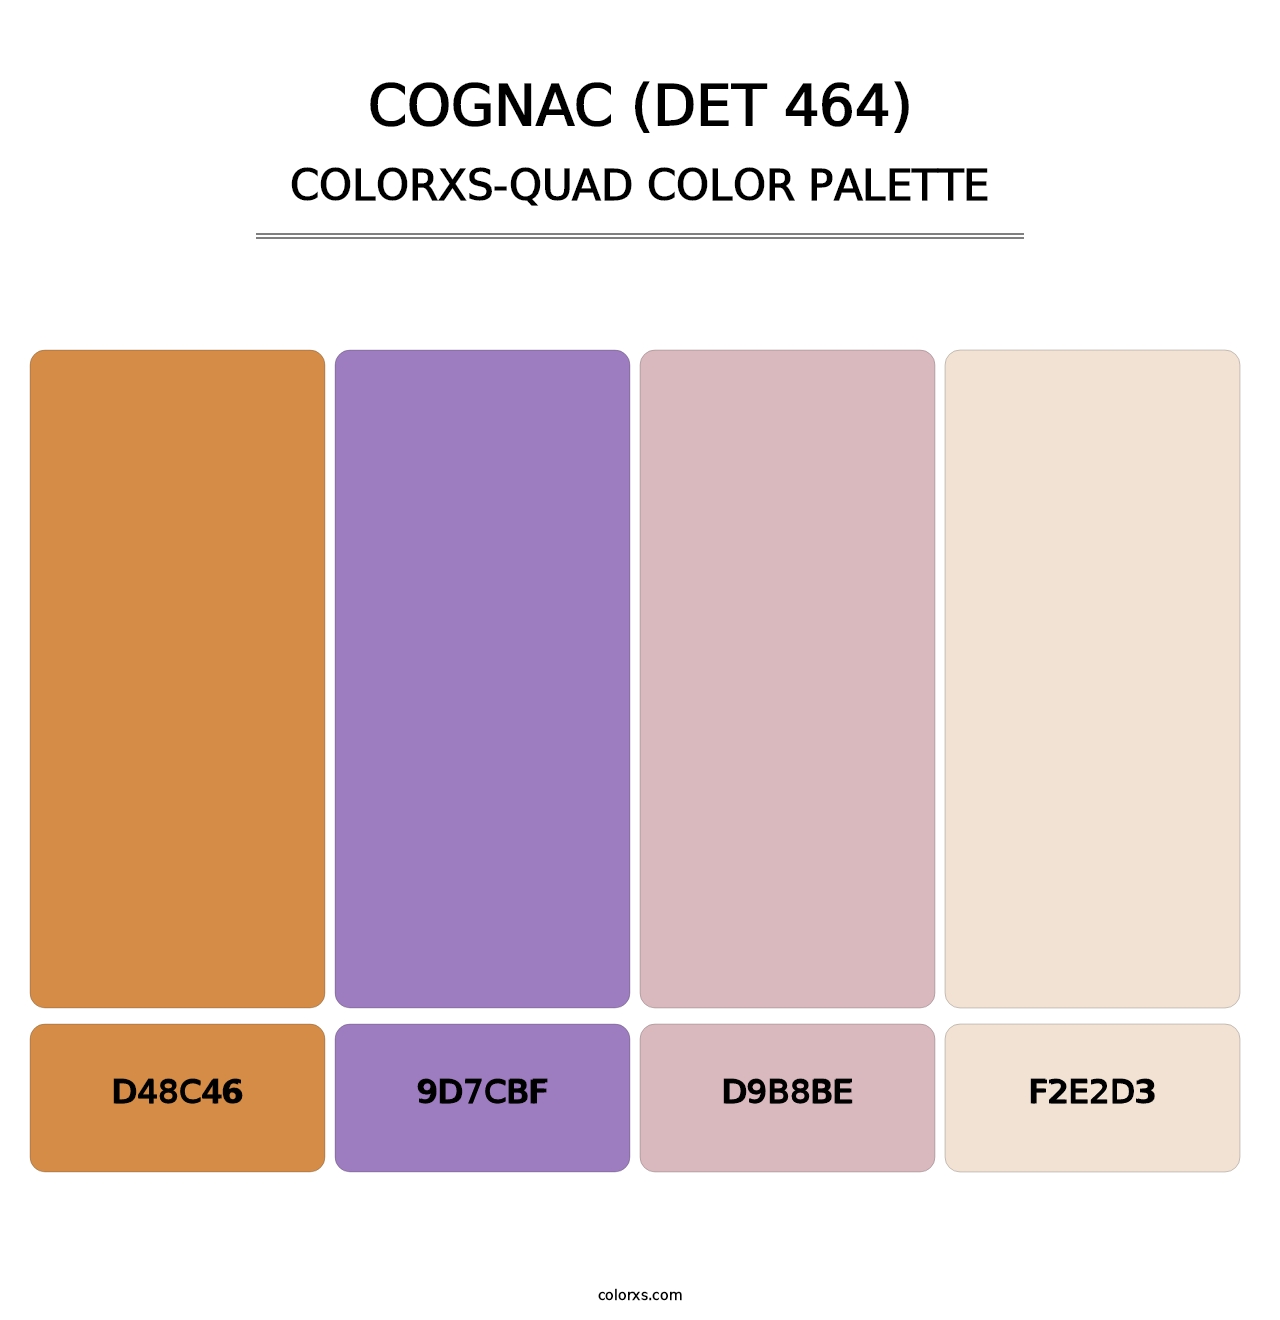 Cognac (DET 464) - Colorxs Quad Palette